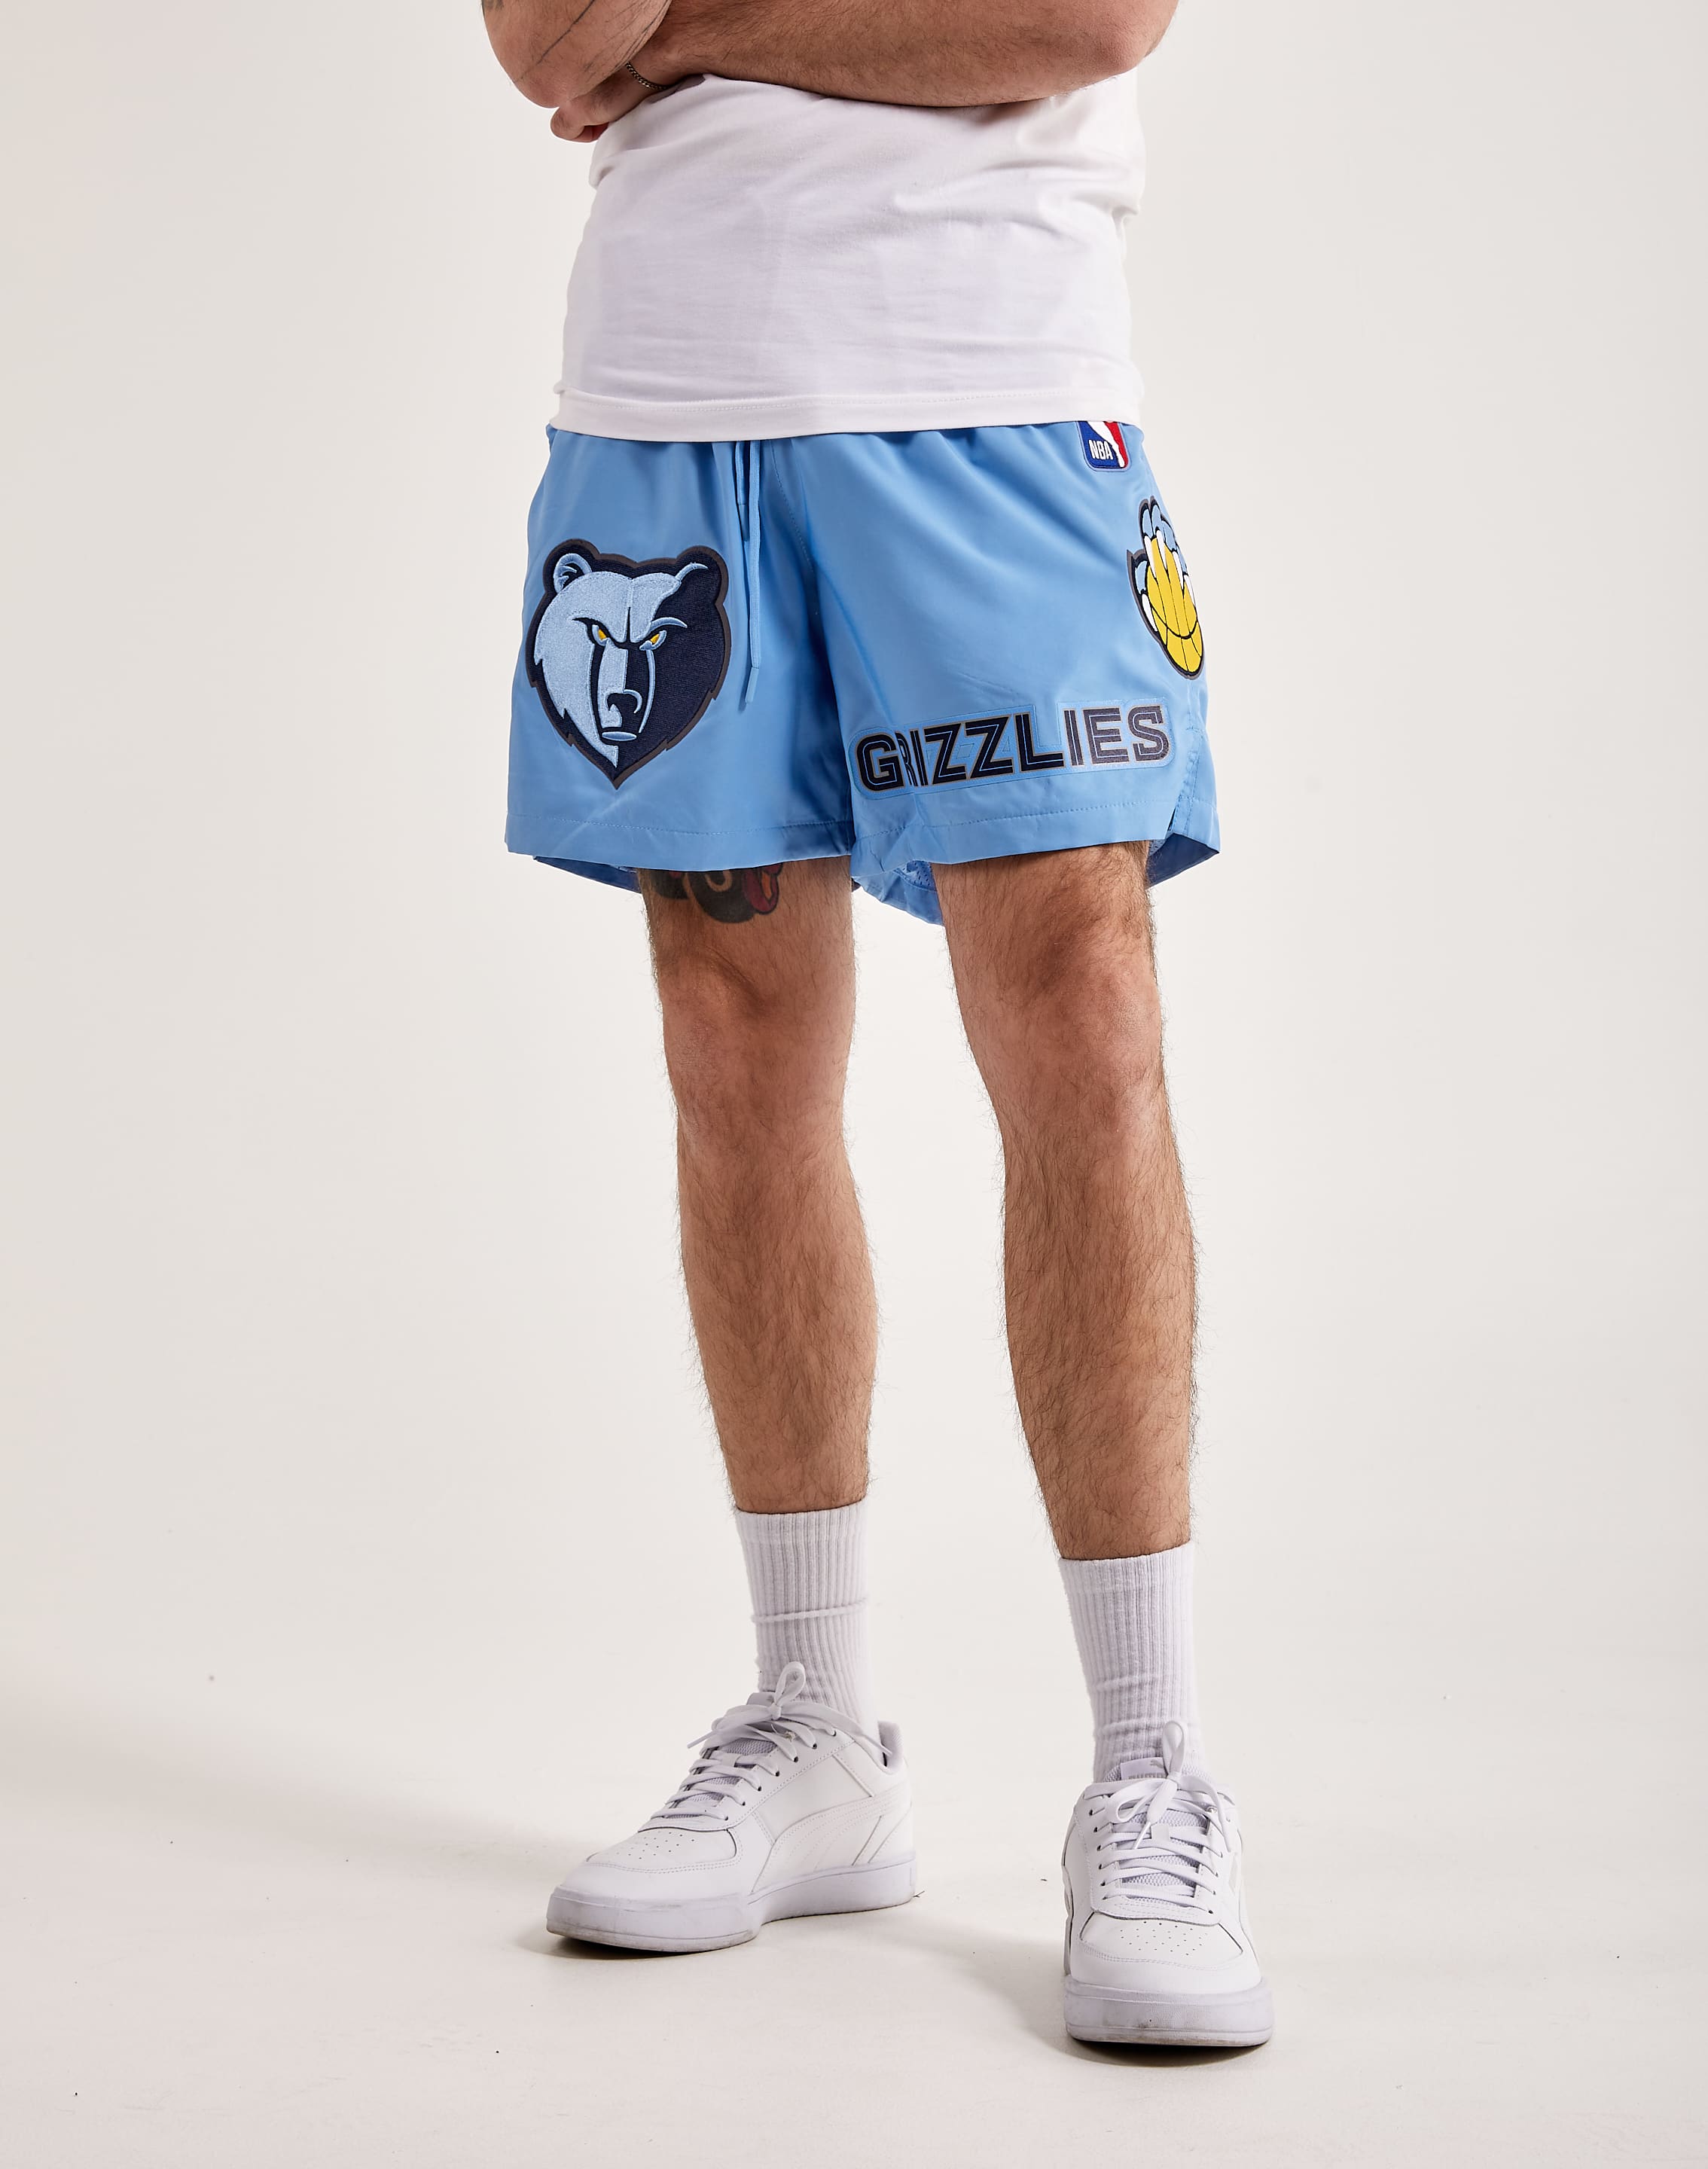 Memphis Grizzlies NBA Shorts for sale